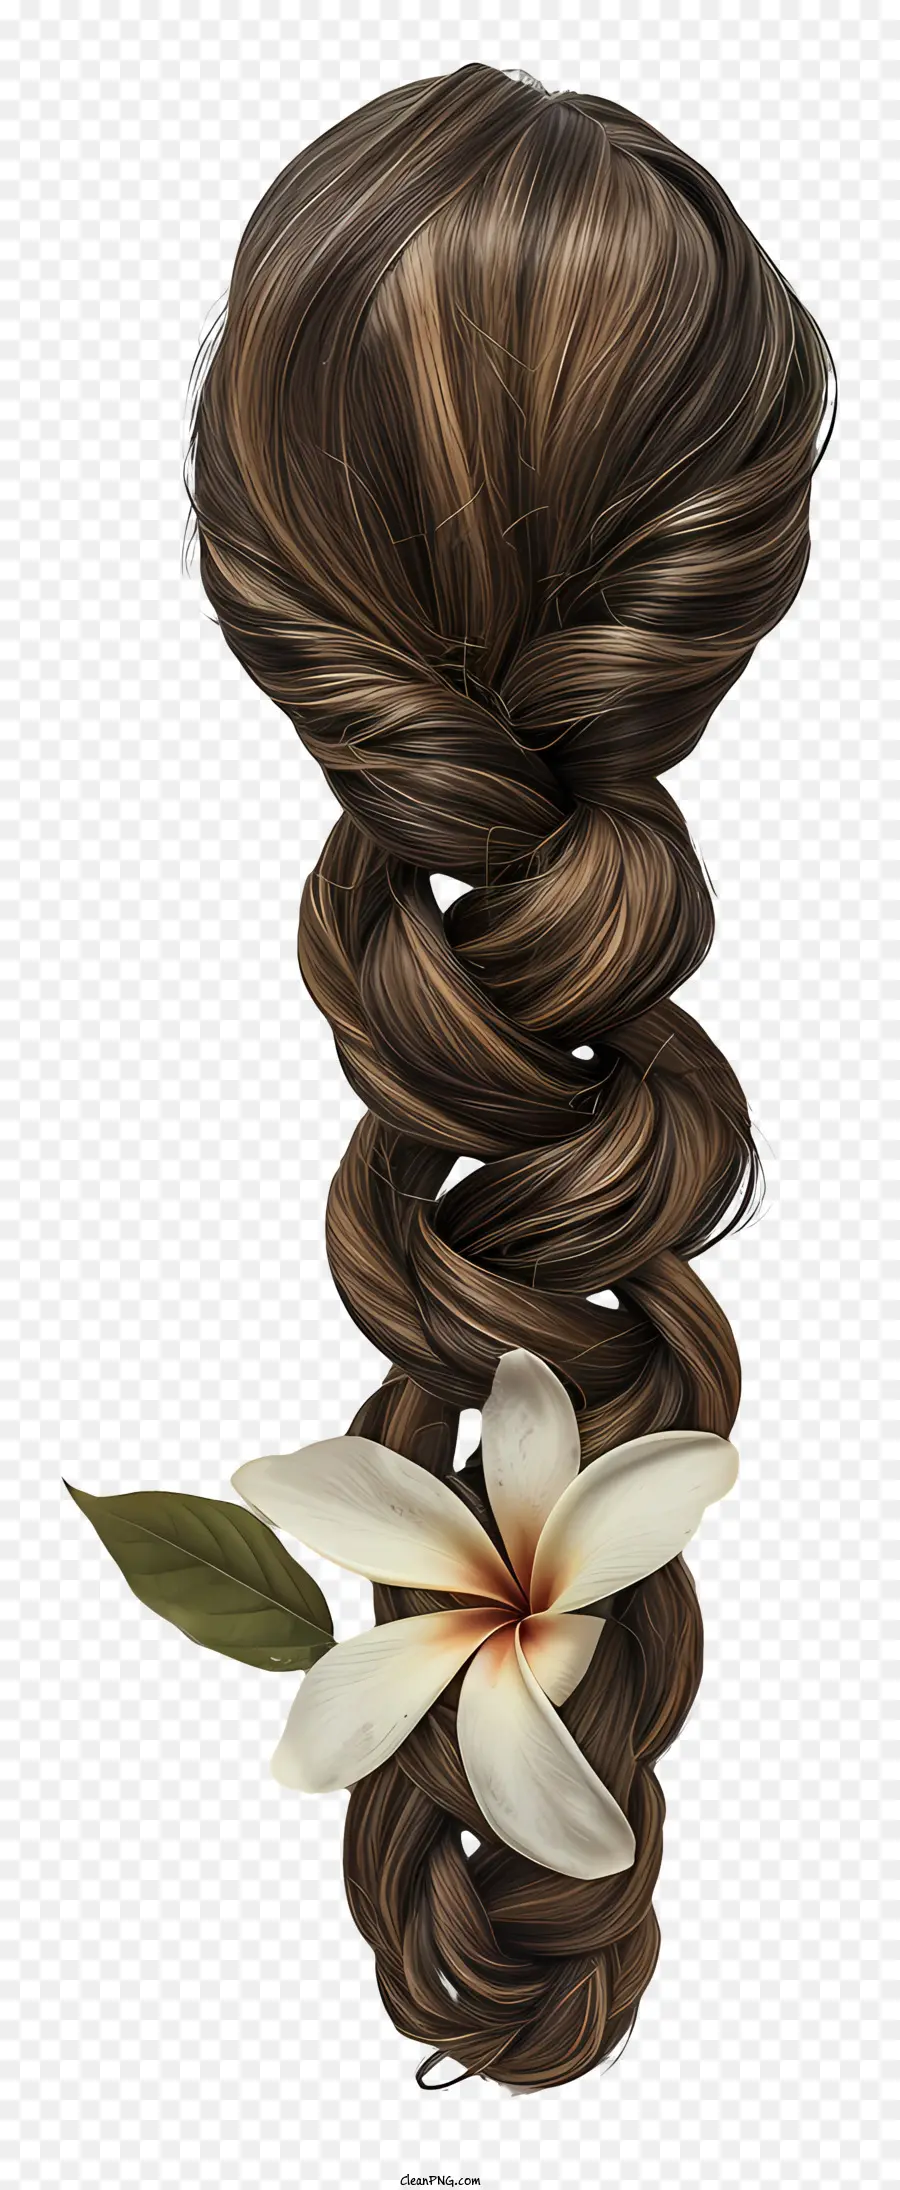 weiße Blume - Langes dunkelbraunes Haar in losen Geflecht mit weißer Blume